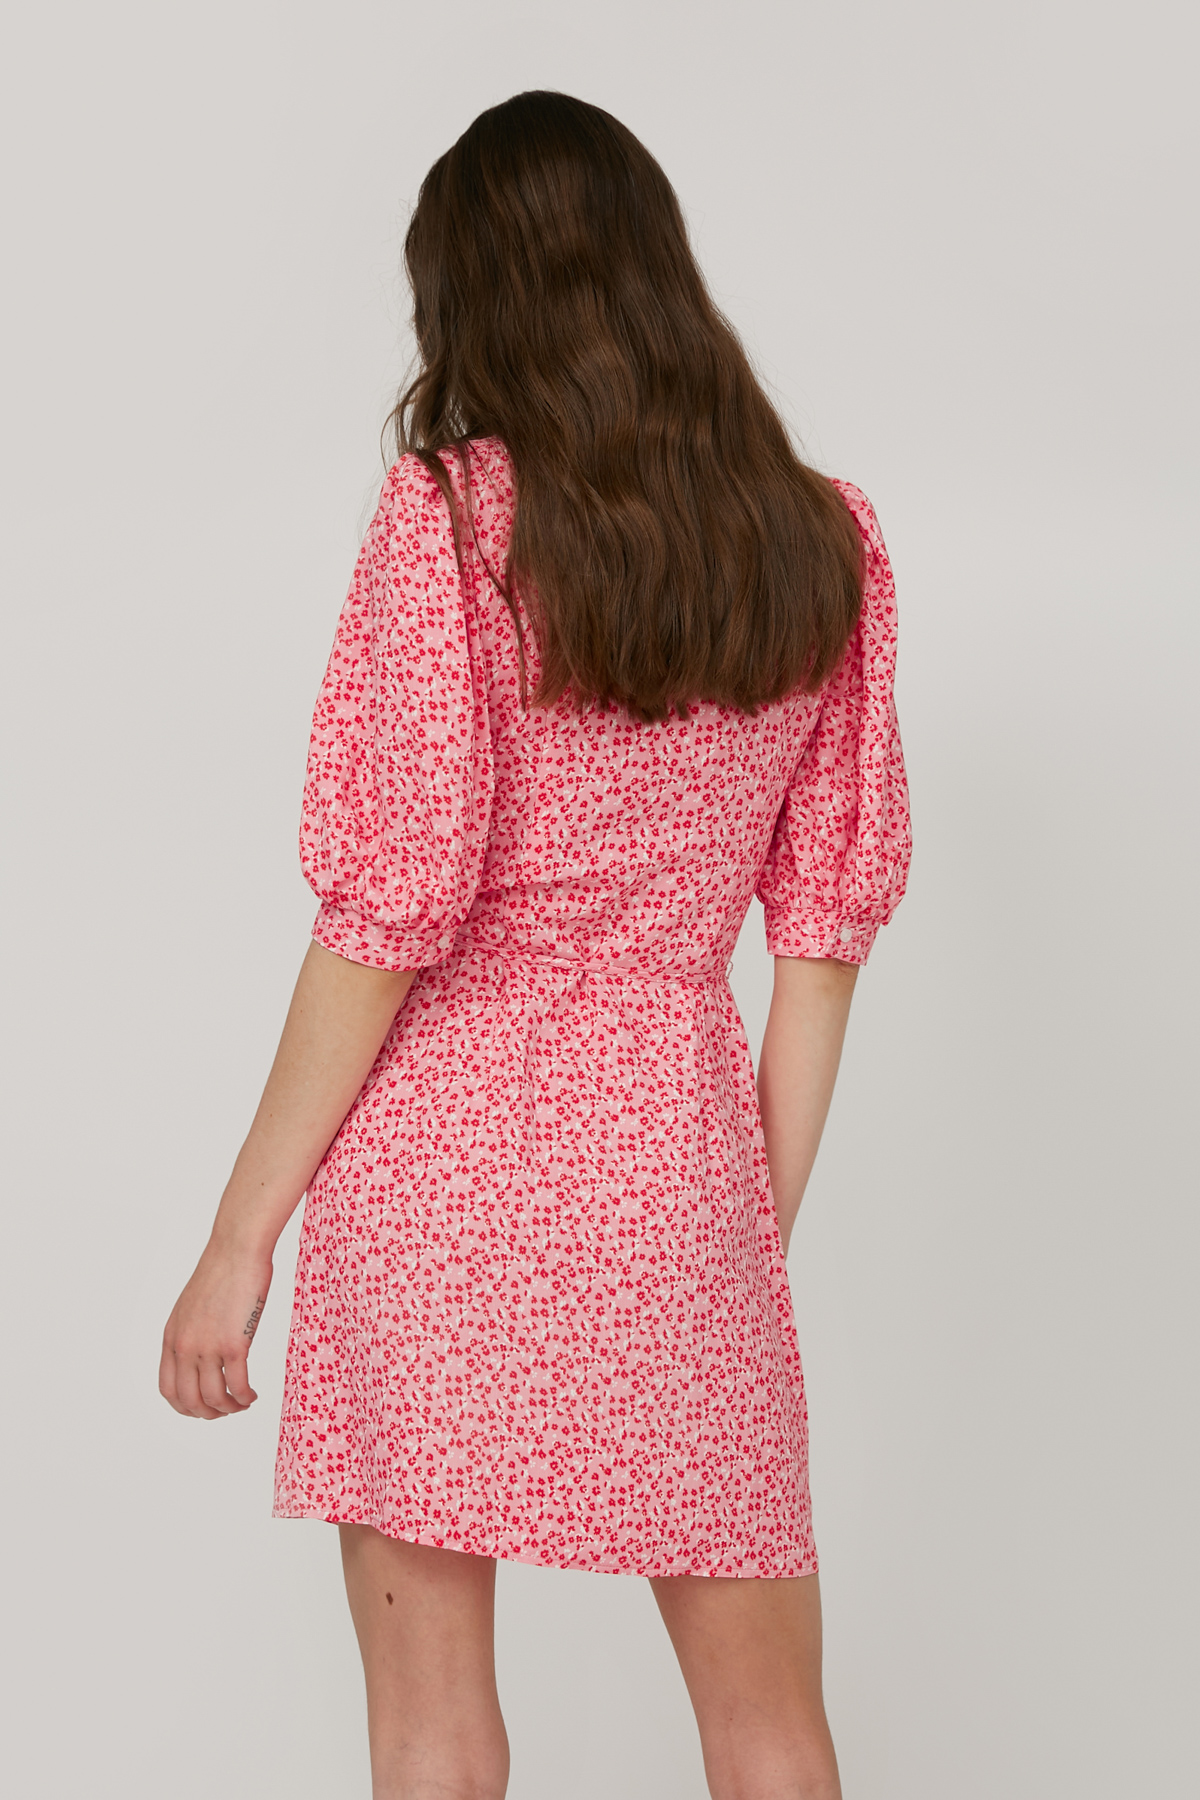 Коротка сукня з віскози рожева в квітковий принт, фото 5